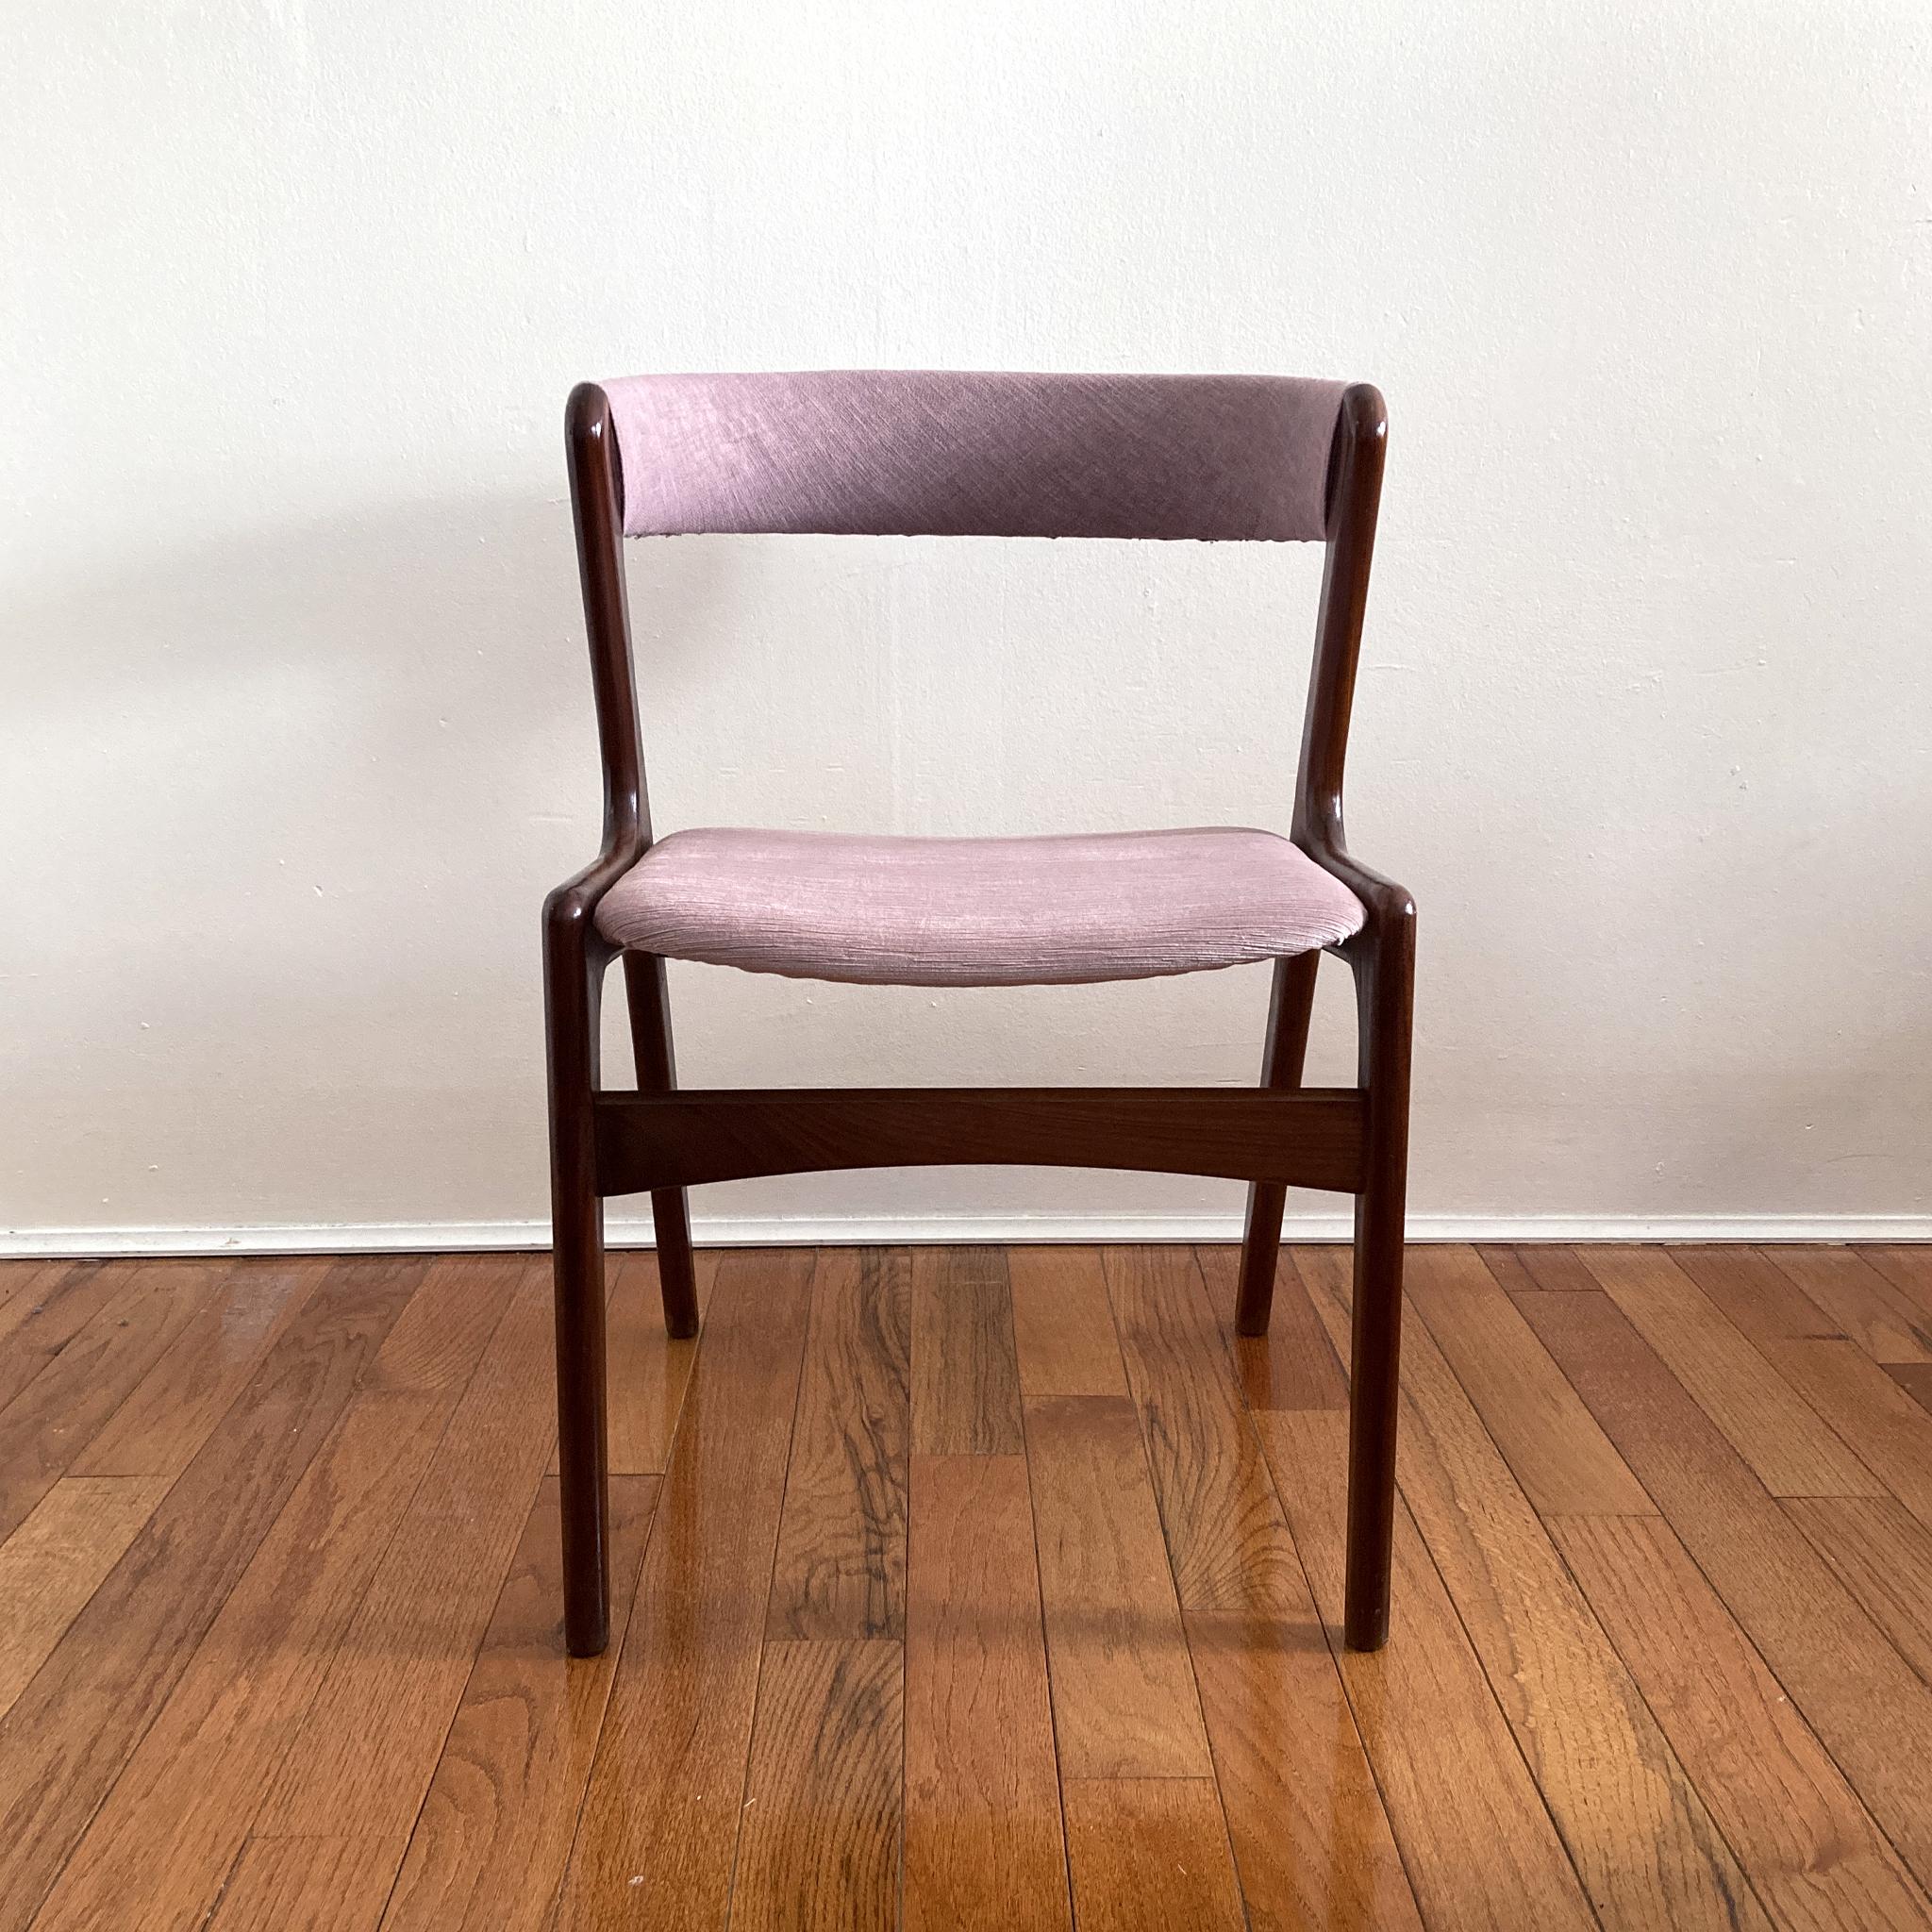 Magnifique chaise du milieu du siècle, silhouette emblématique de la chaise à dossier incurvé de Kai Kristiansen. Structure en teck, assise recouverte de velours rose mauve et dossier incurvé recouvert d'un tweed mauve coordonné. Structurellement